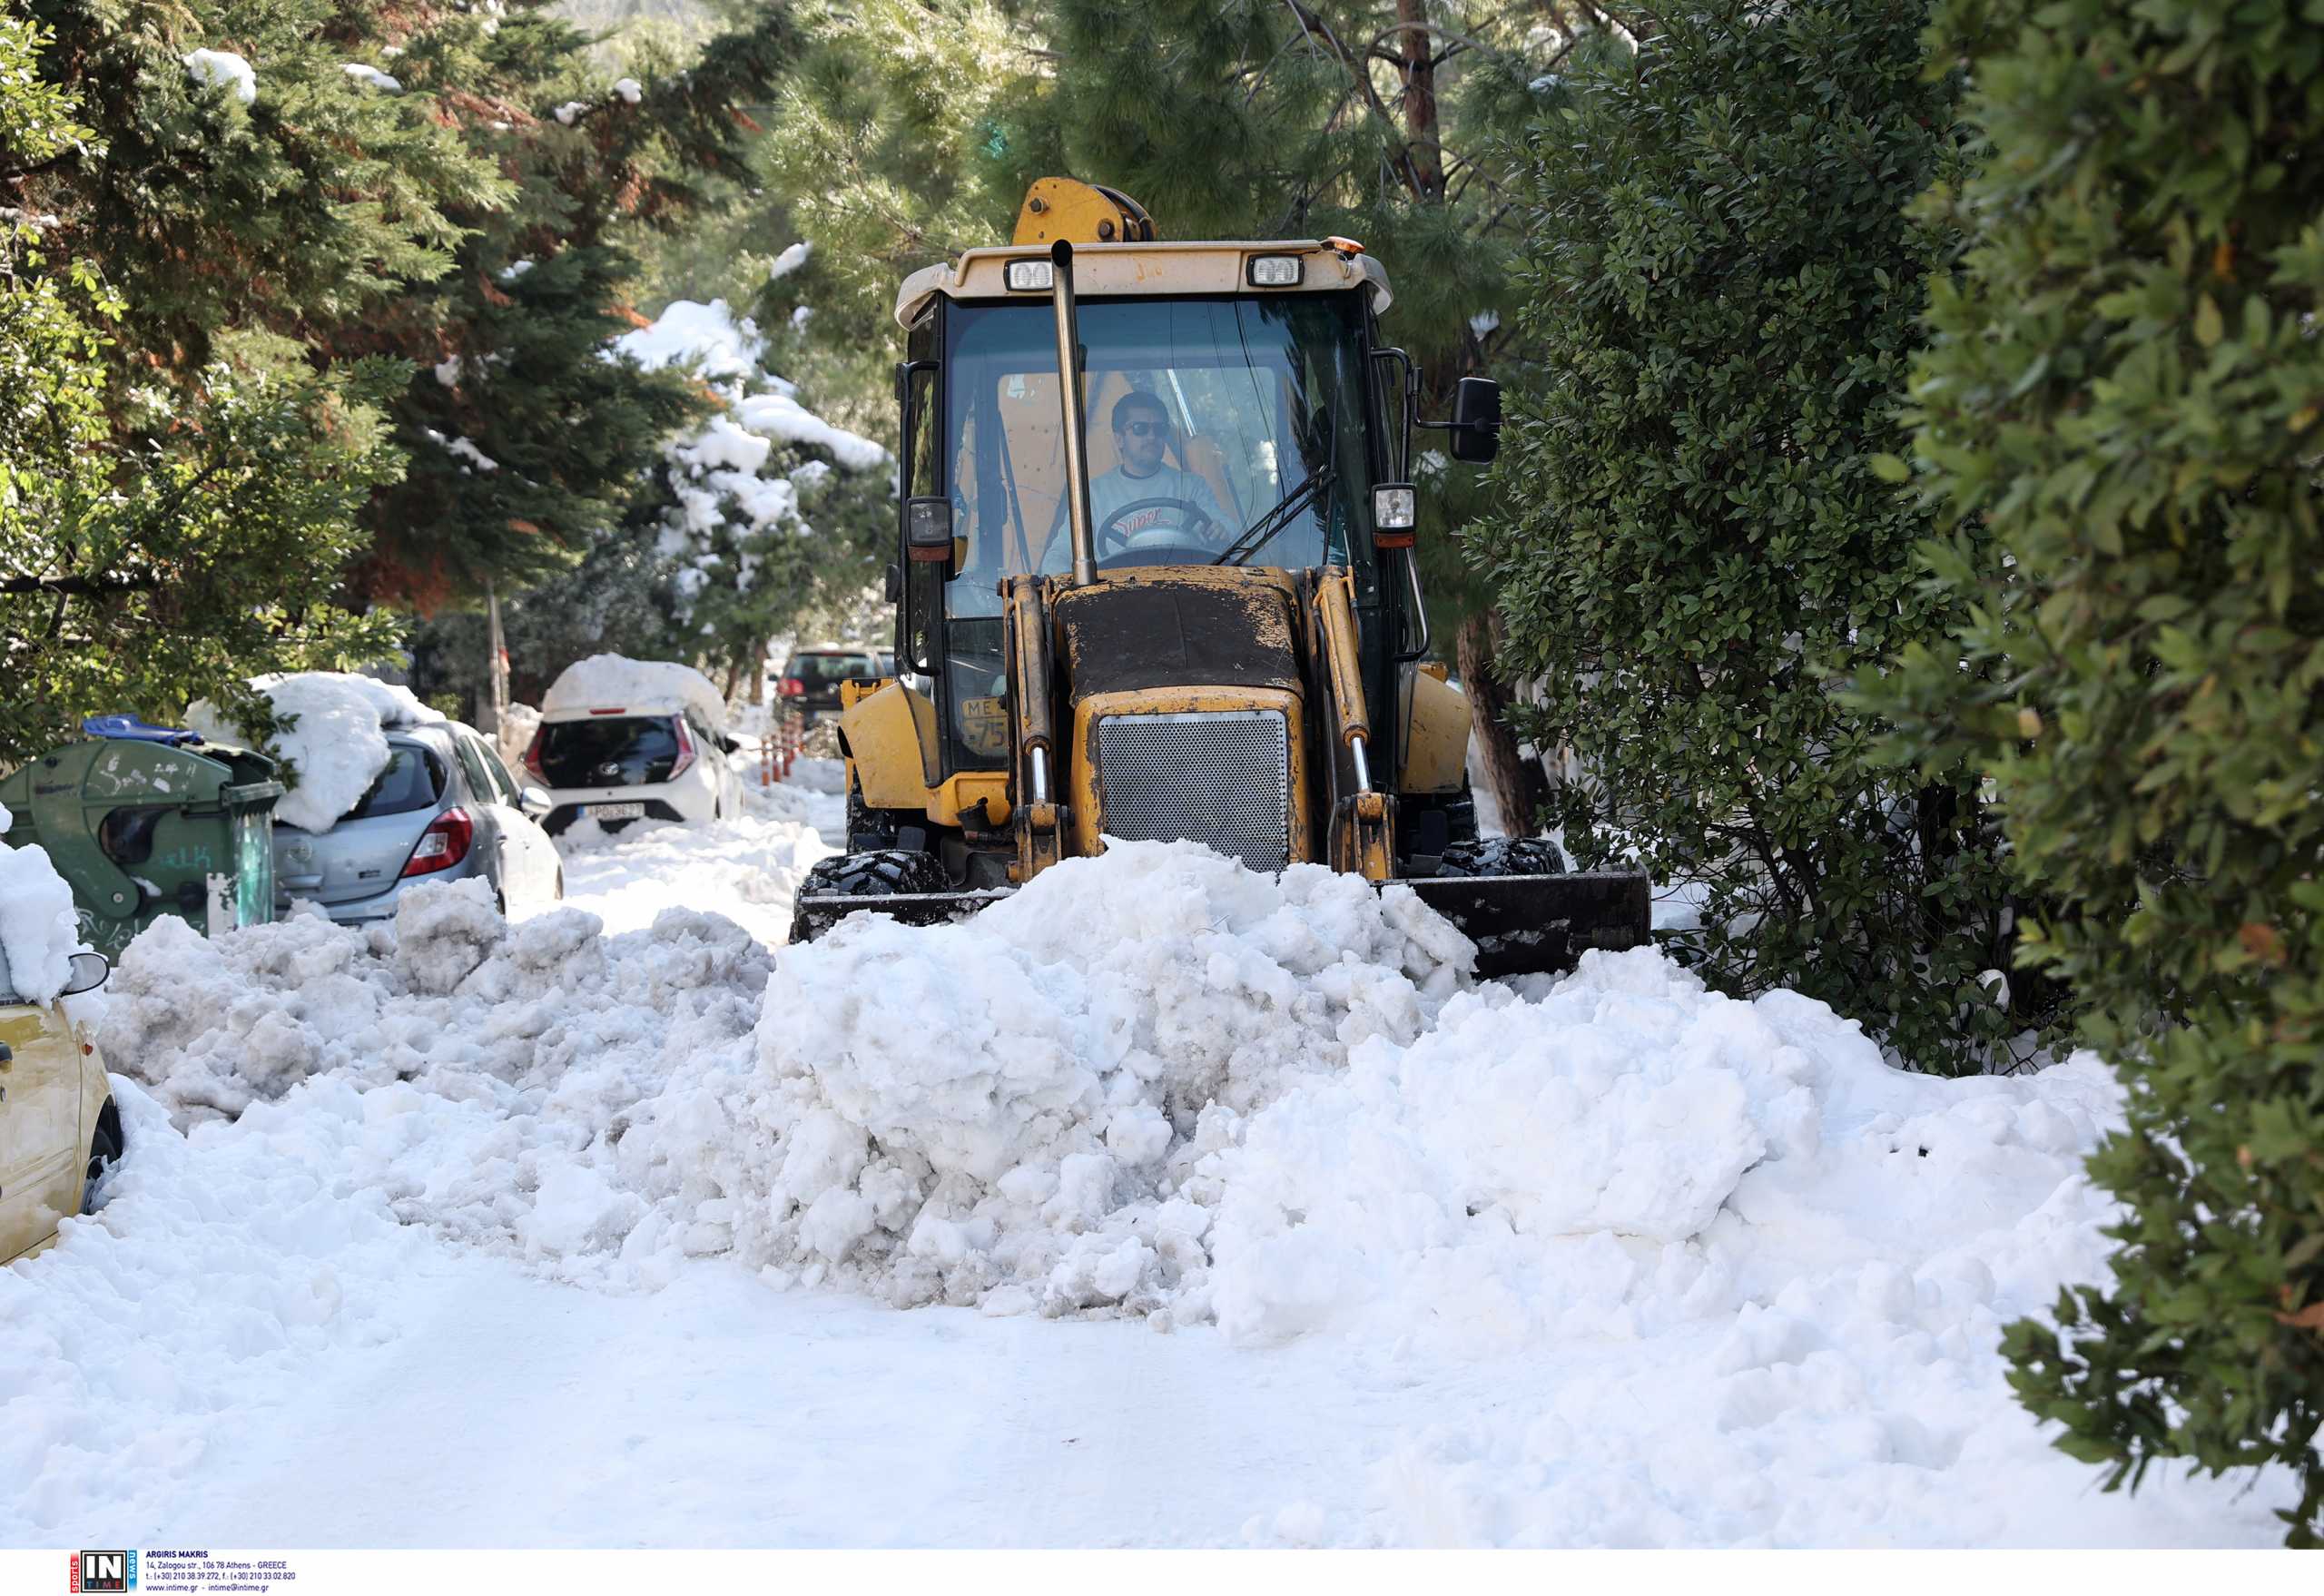 Απελπισμένοι οι κάτοικοι στο Πάτημα Χαλανδρίου: Χιόνια, σκουπίδια και σπίτια χωρίς ρεύμα εδώ και πέντε μέρες